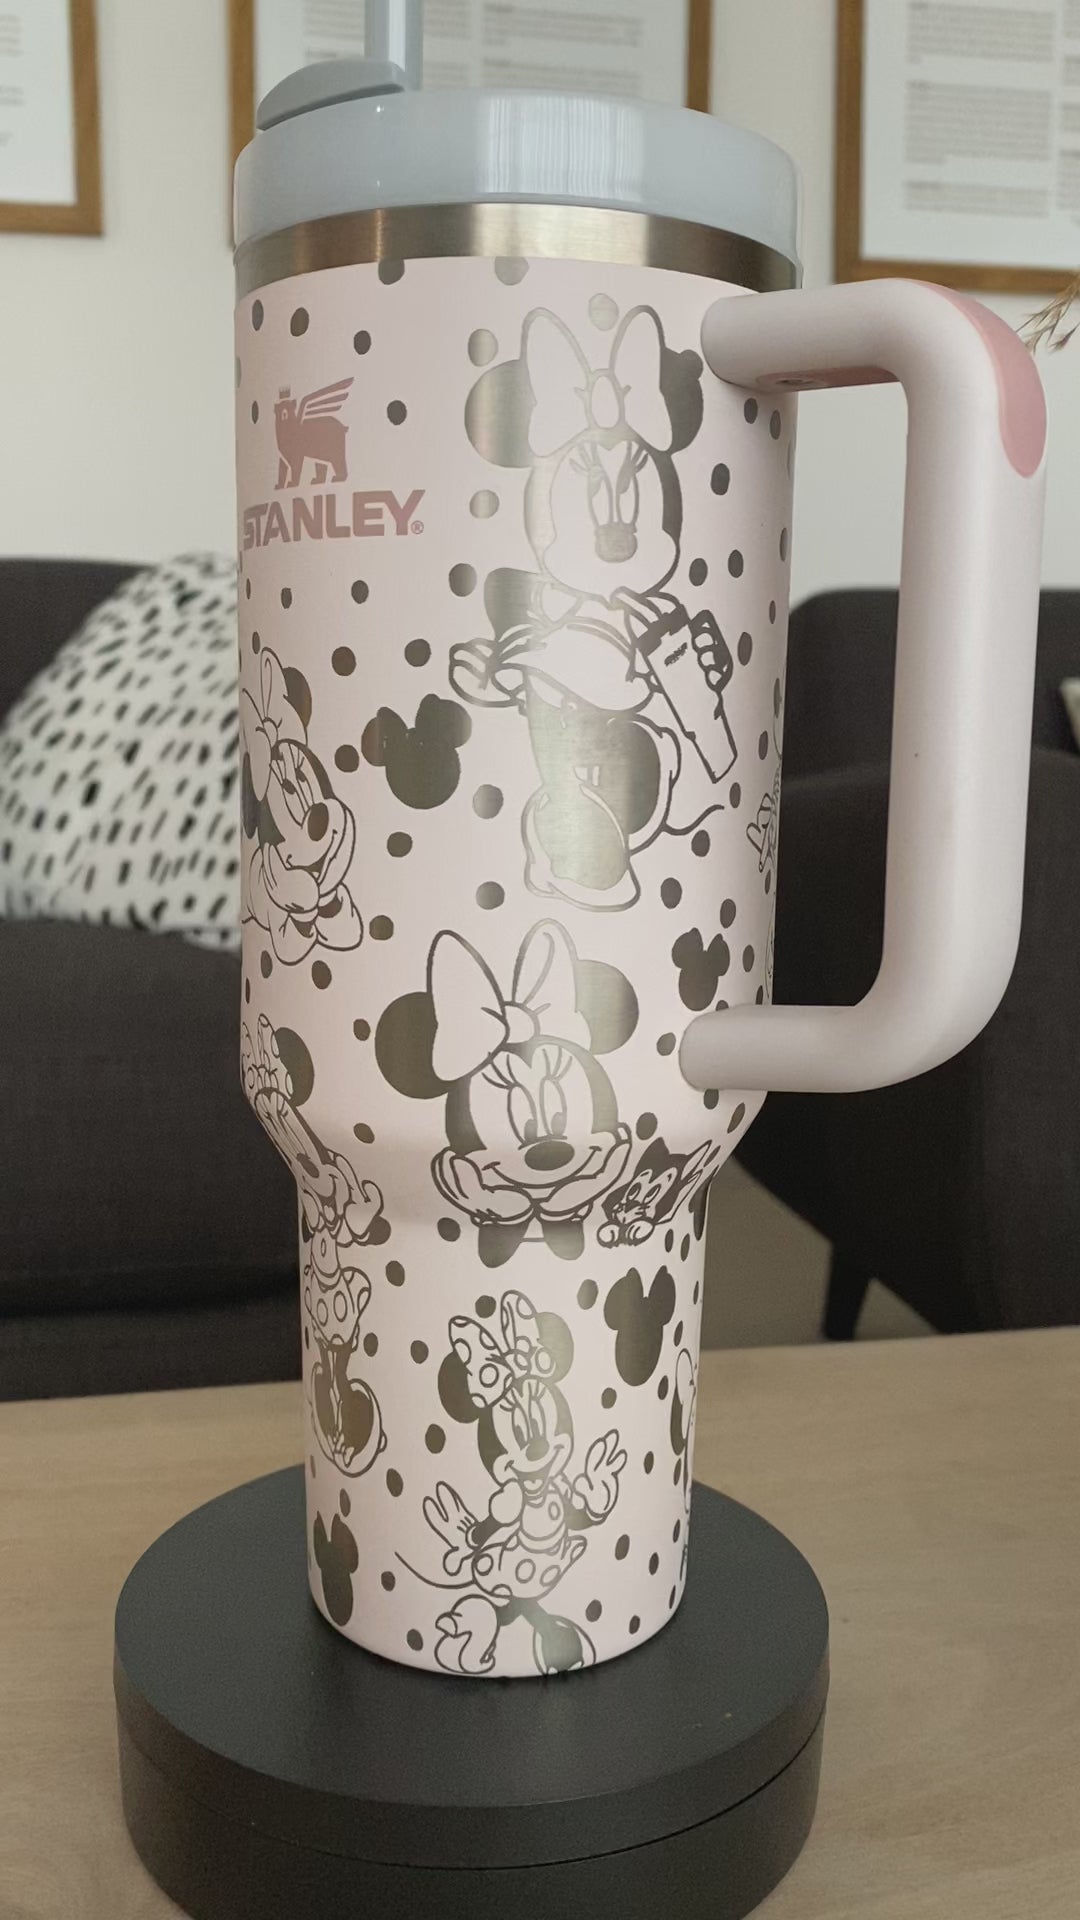 Such a cool customized Disney Stanley tumbler by @etchandember  #disneytumbler #disneystanley #stanleydisney #disneymug #disneycastle…